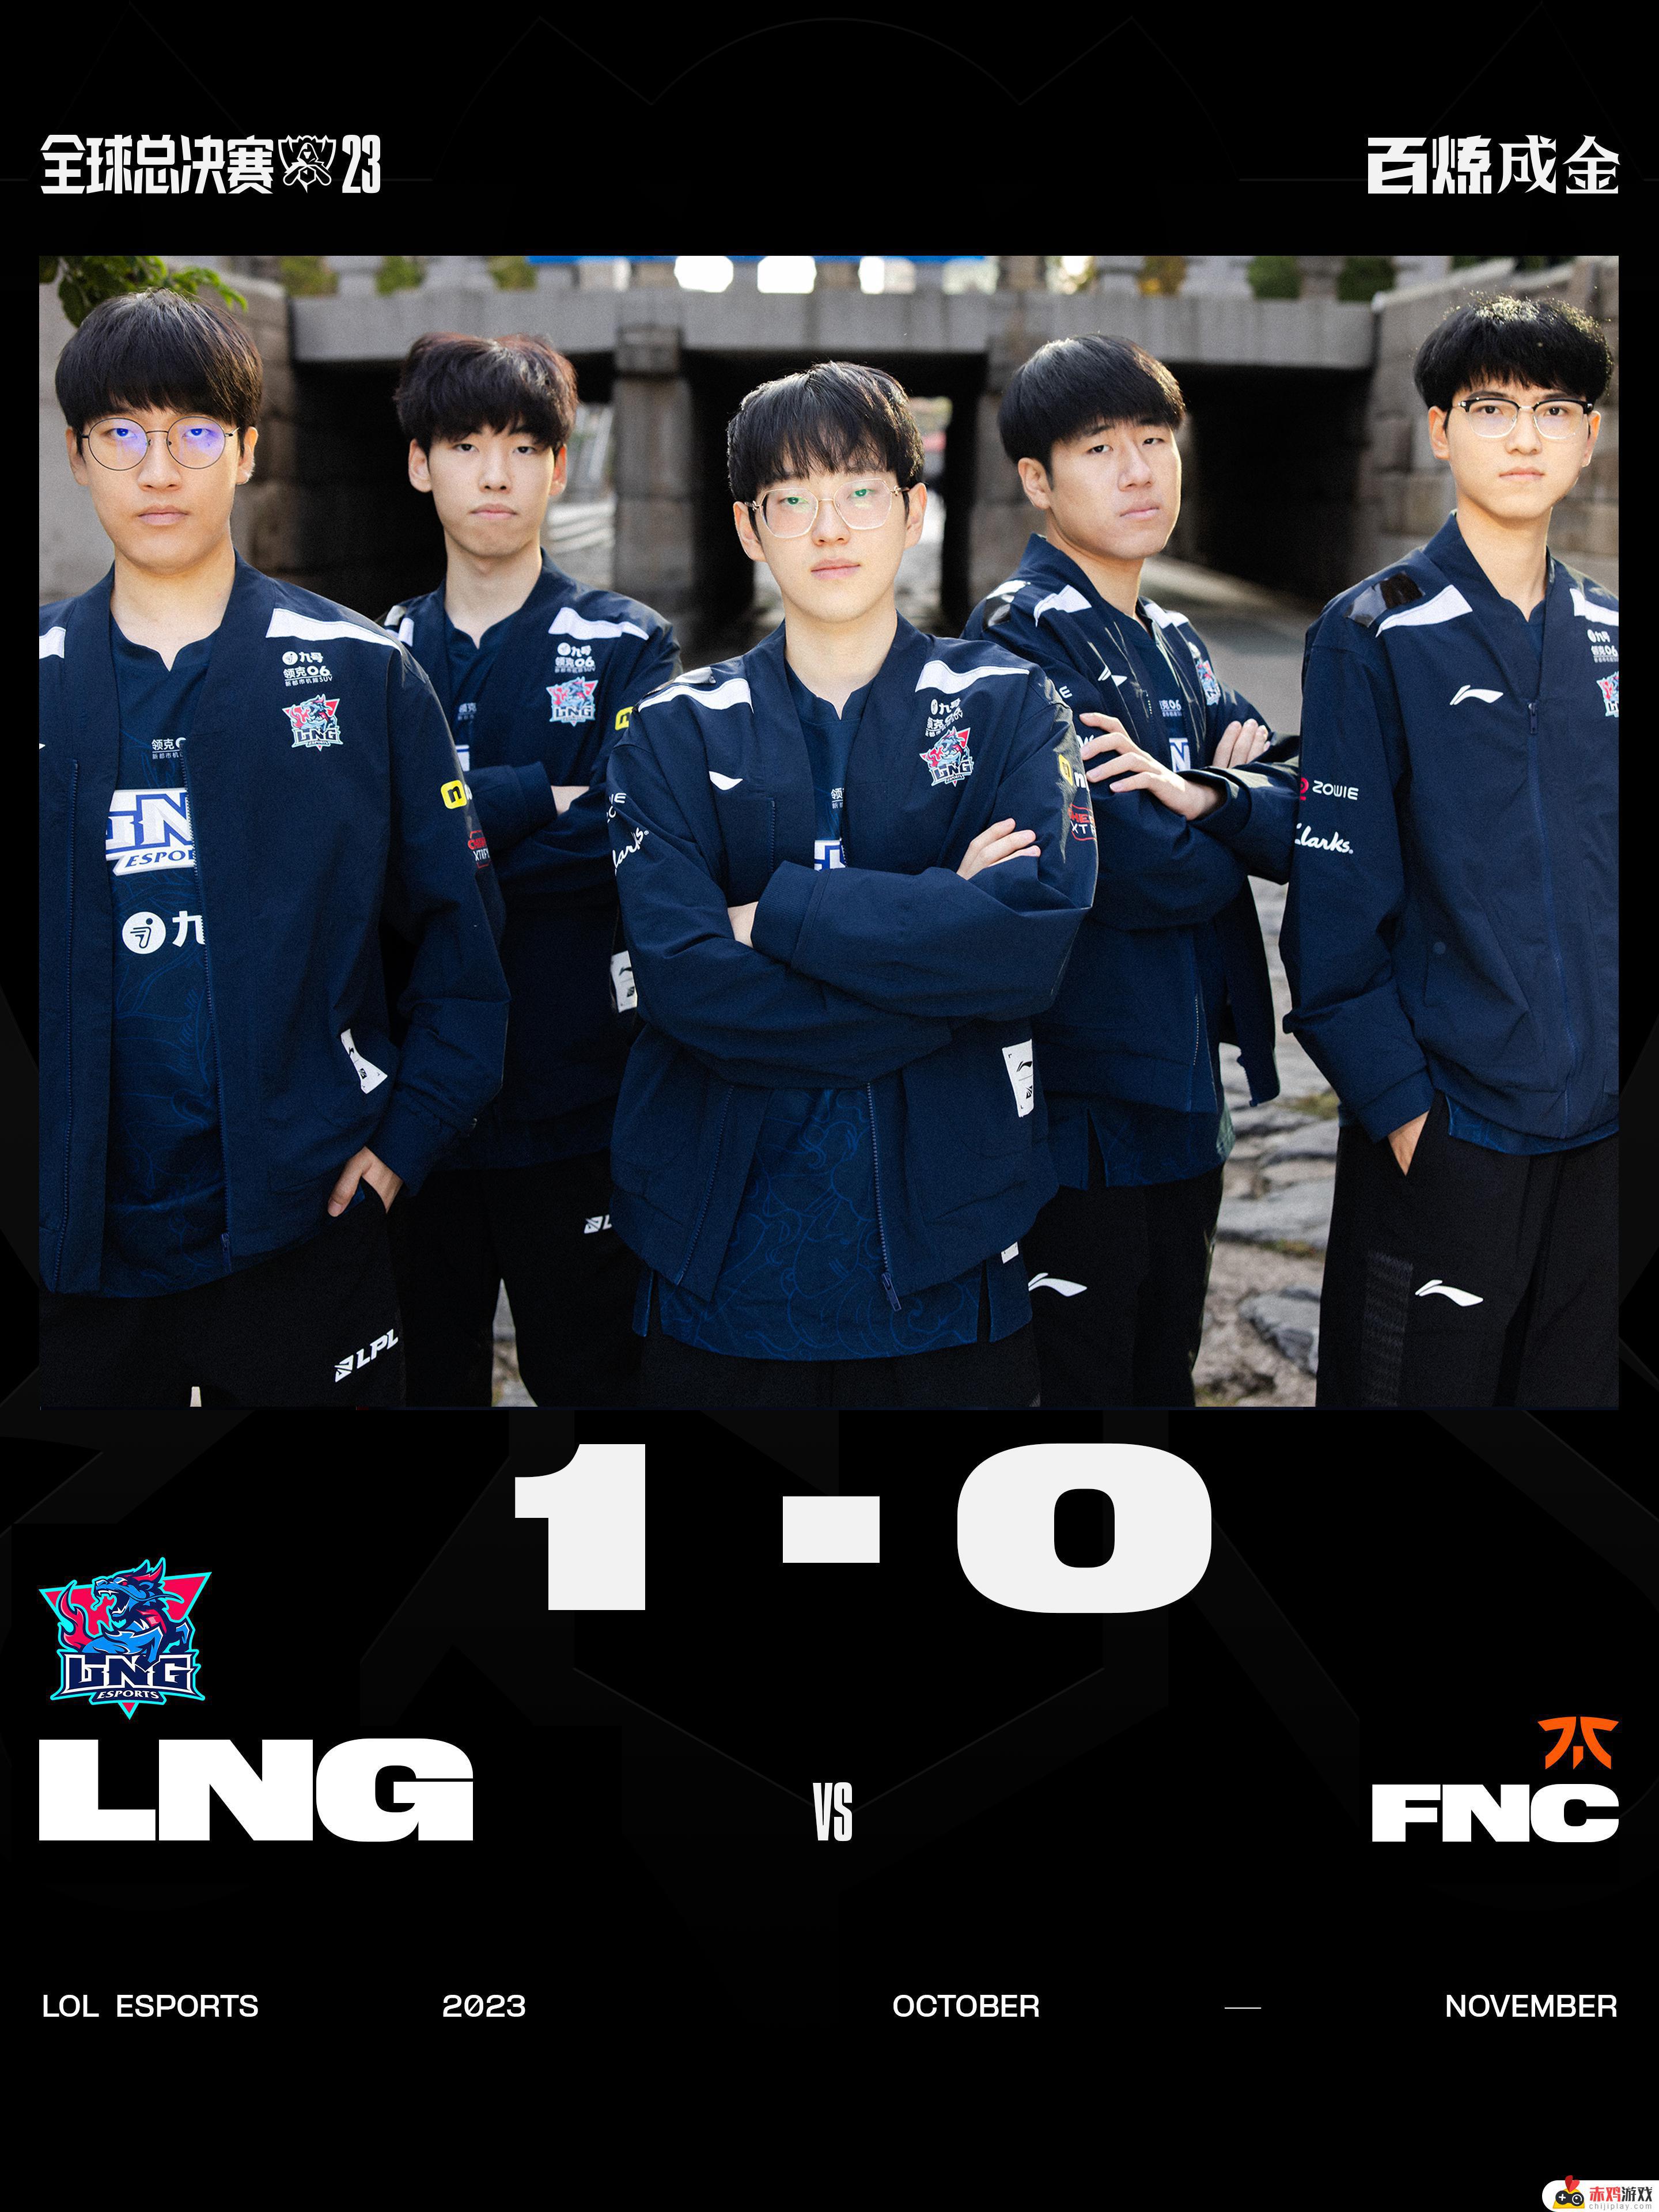 英雄联盟LNG 1-0 FNC，LNG豪取比赛胜利！